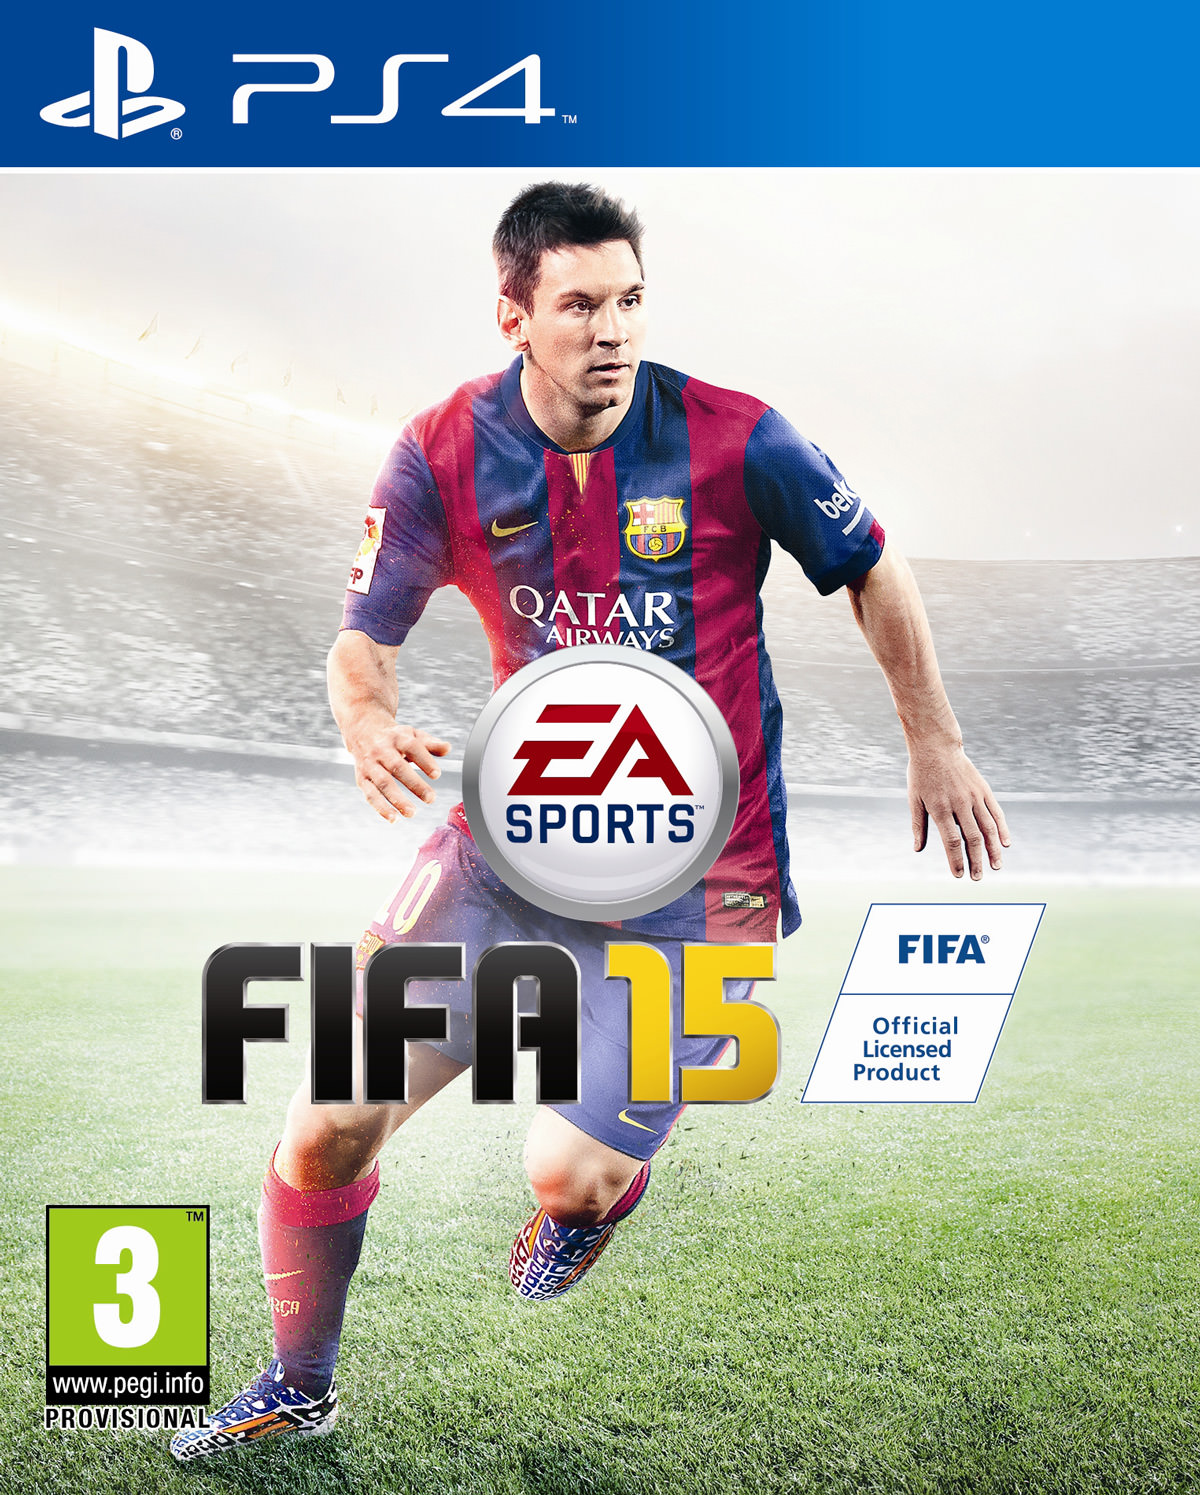 FIFA 15 Covers (Packshots)